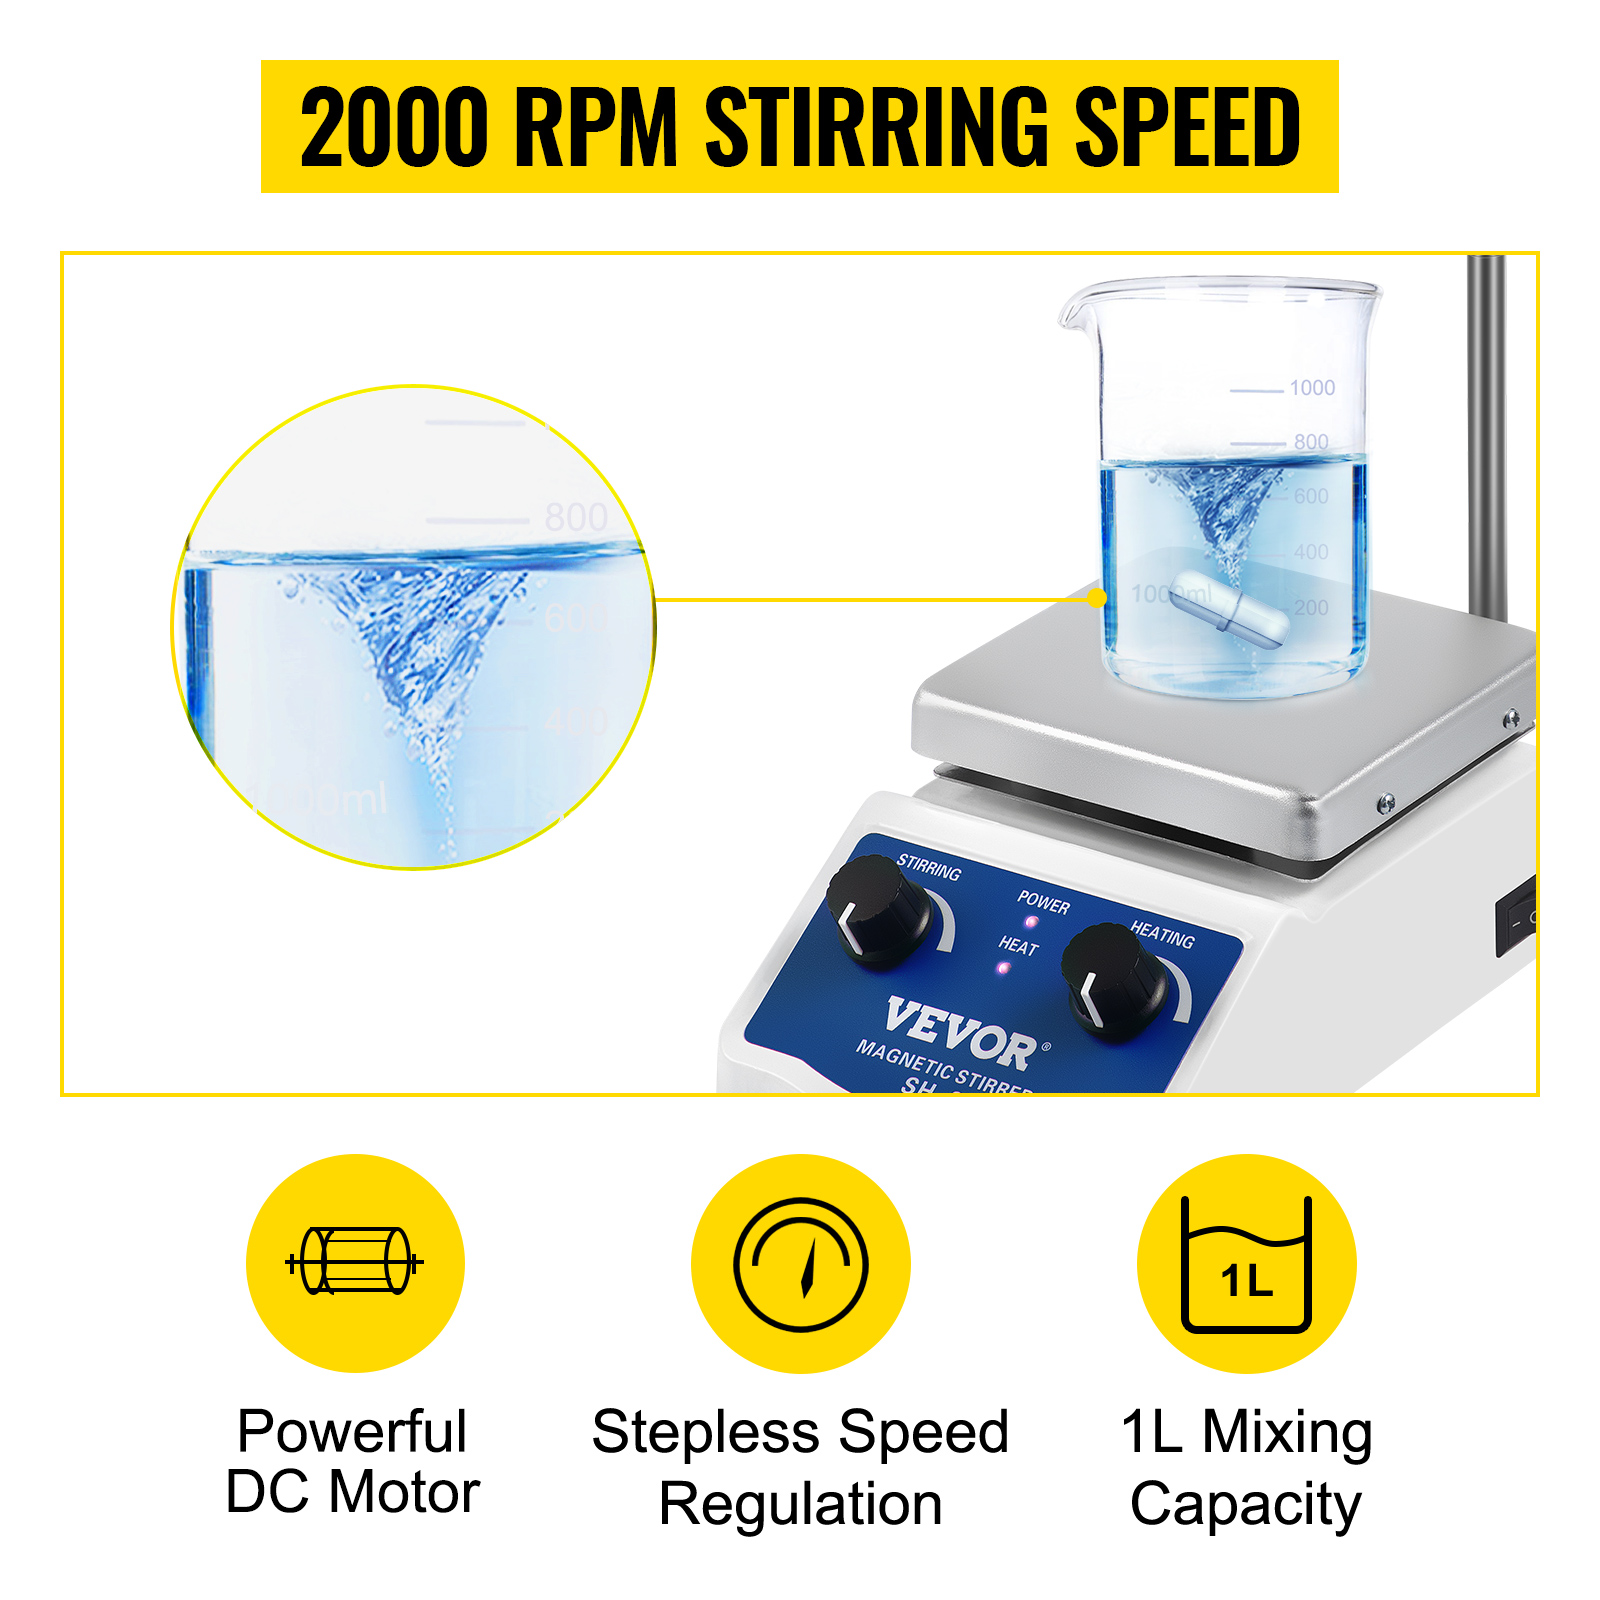 Steroglass - L'agitatore magnetico riscaldante STWH220 soddisfa in maniera  ottimale le esigenze dei laboratori chimici, garantendo prestazioni elevate  ed affidabili. Per assicurare un'elevata stabilità della temperatura ed  un'efficace resistenza